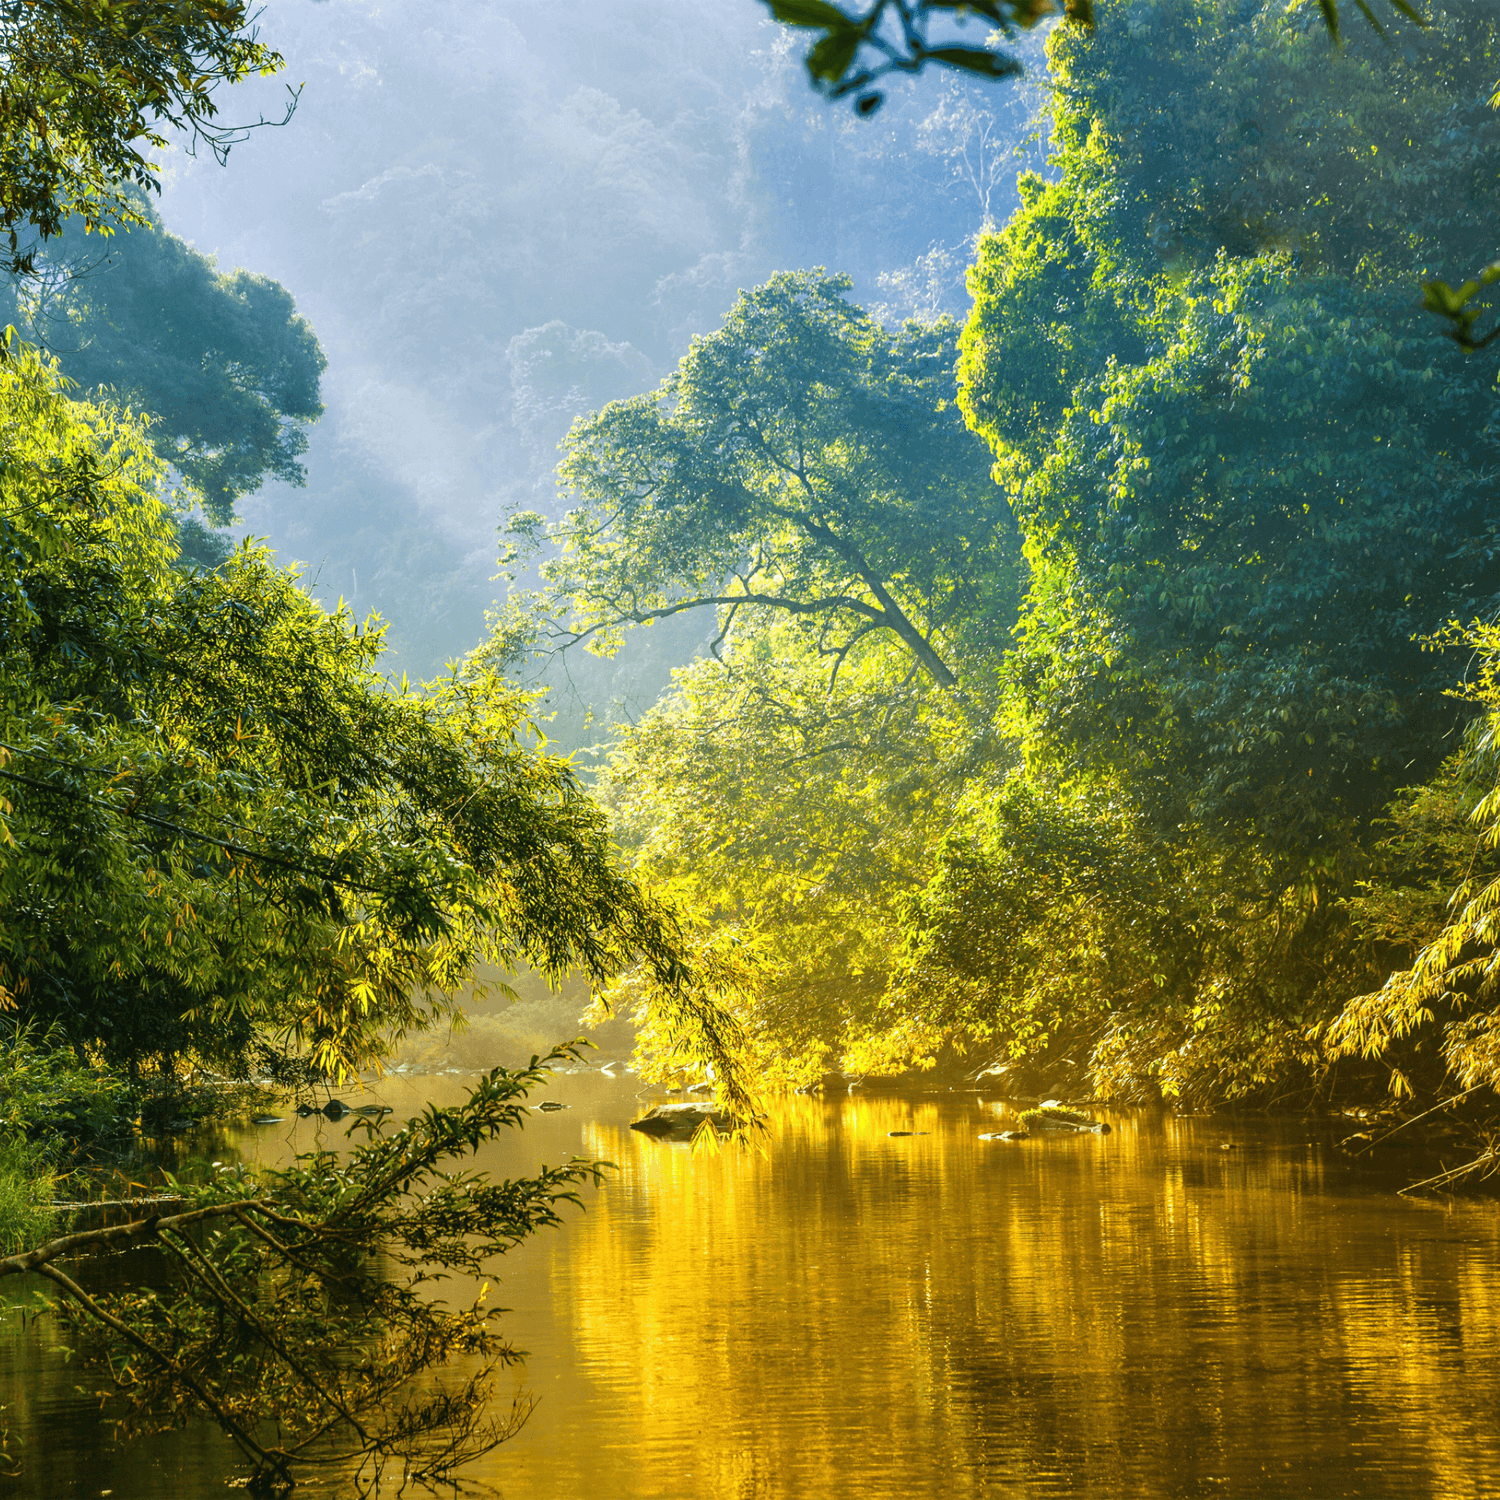 Urwald des Amazonas